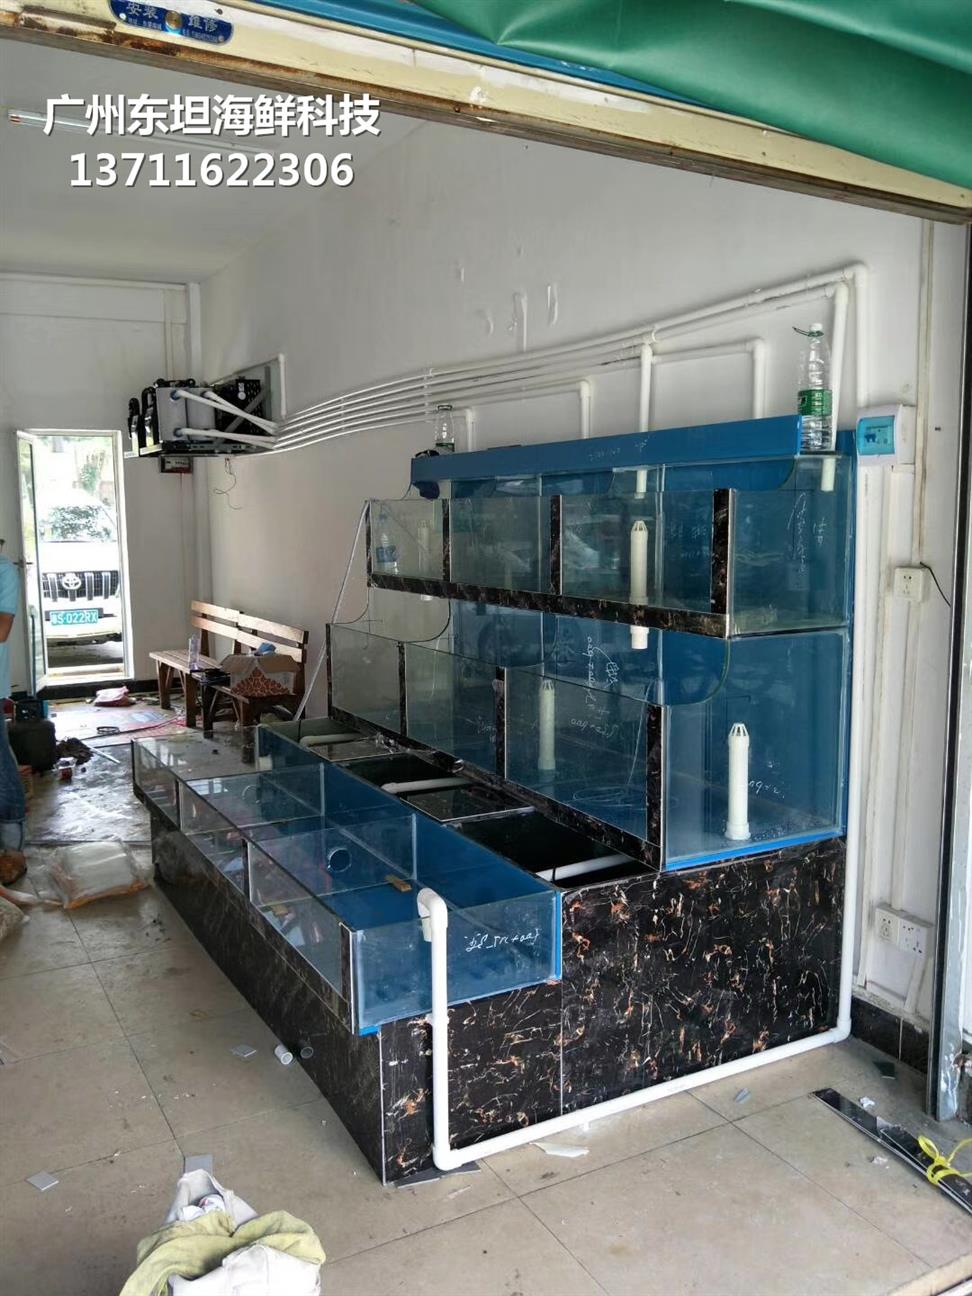 广州白云玻璃海鲜池怎么清洗消毒